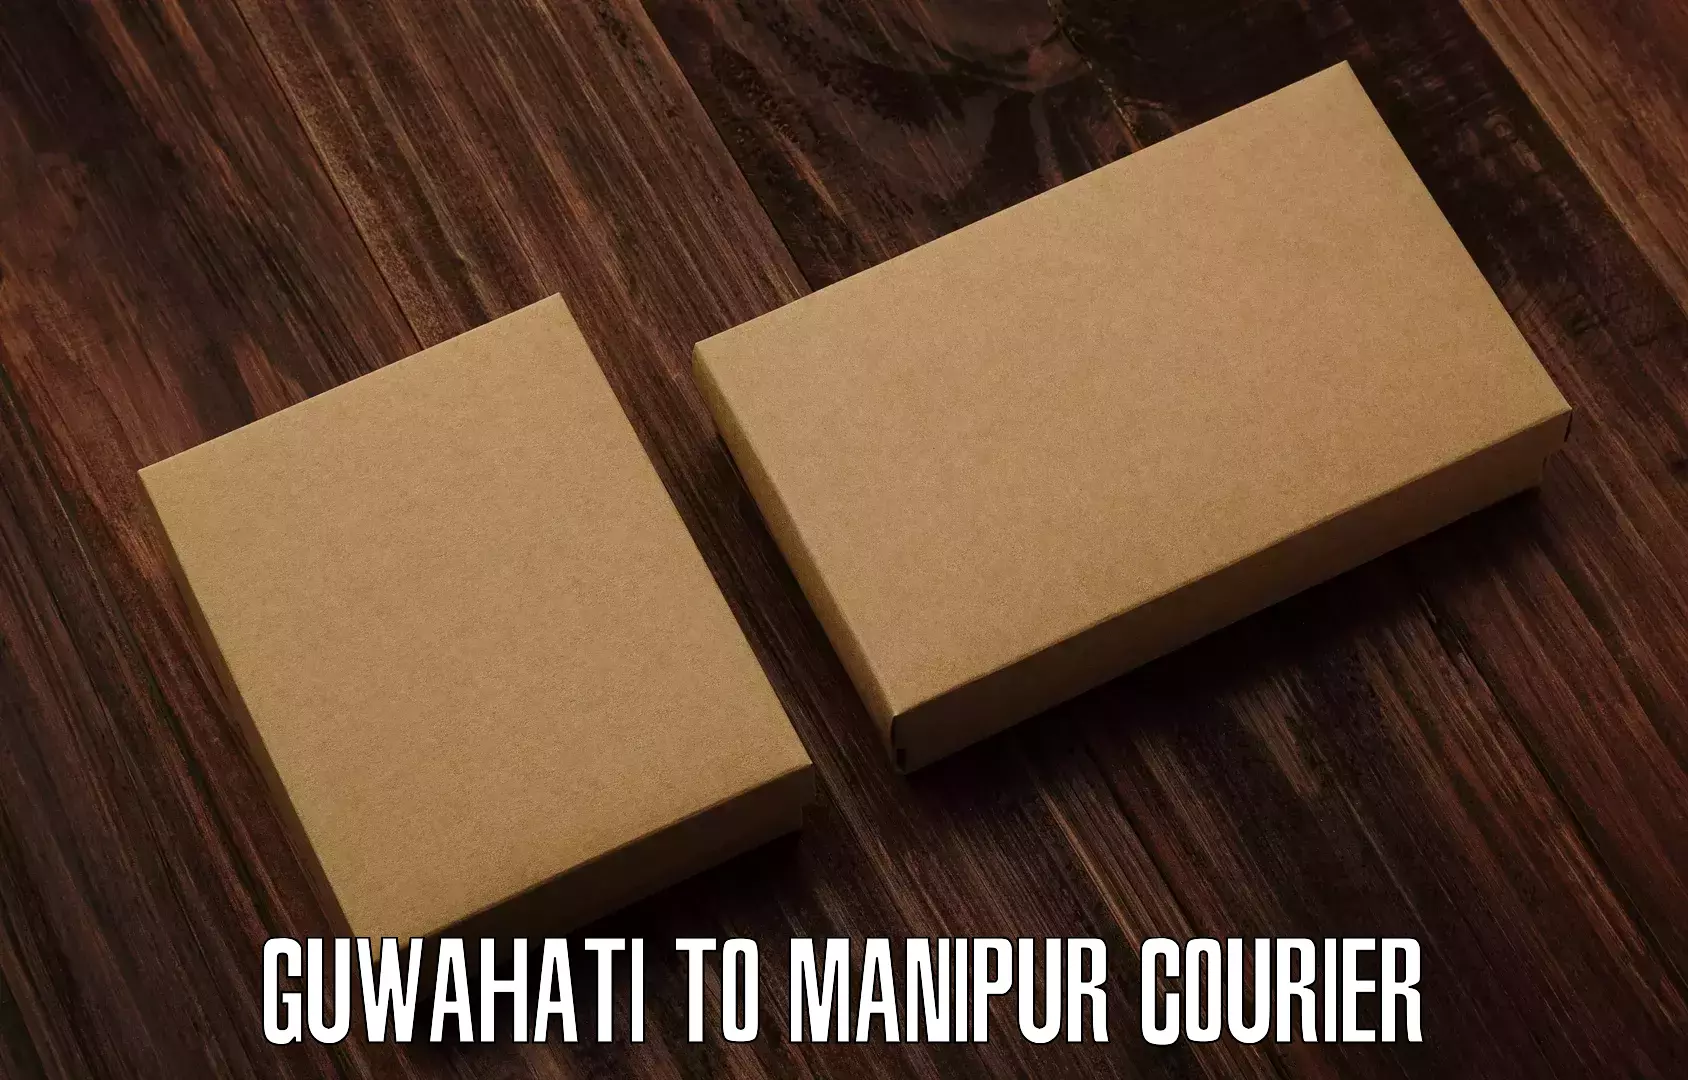 Courier service comparison in Guwahati to Senapati